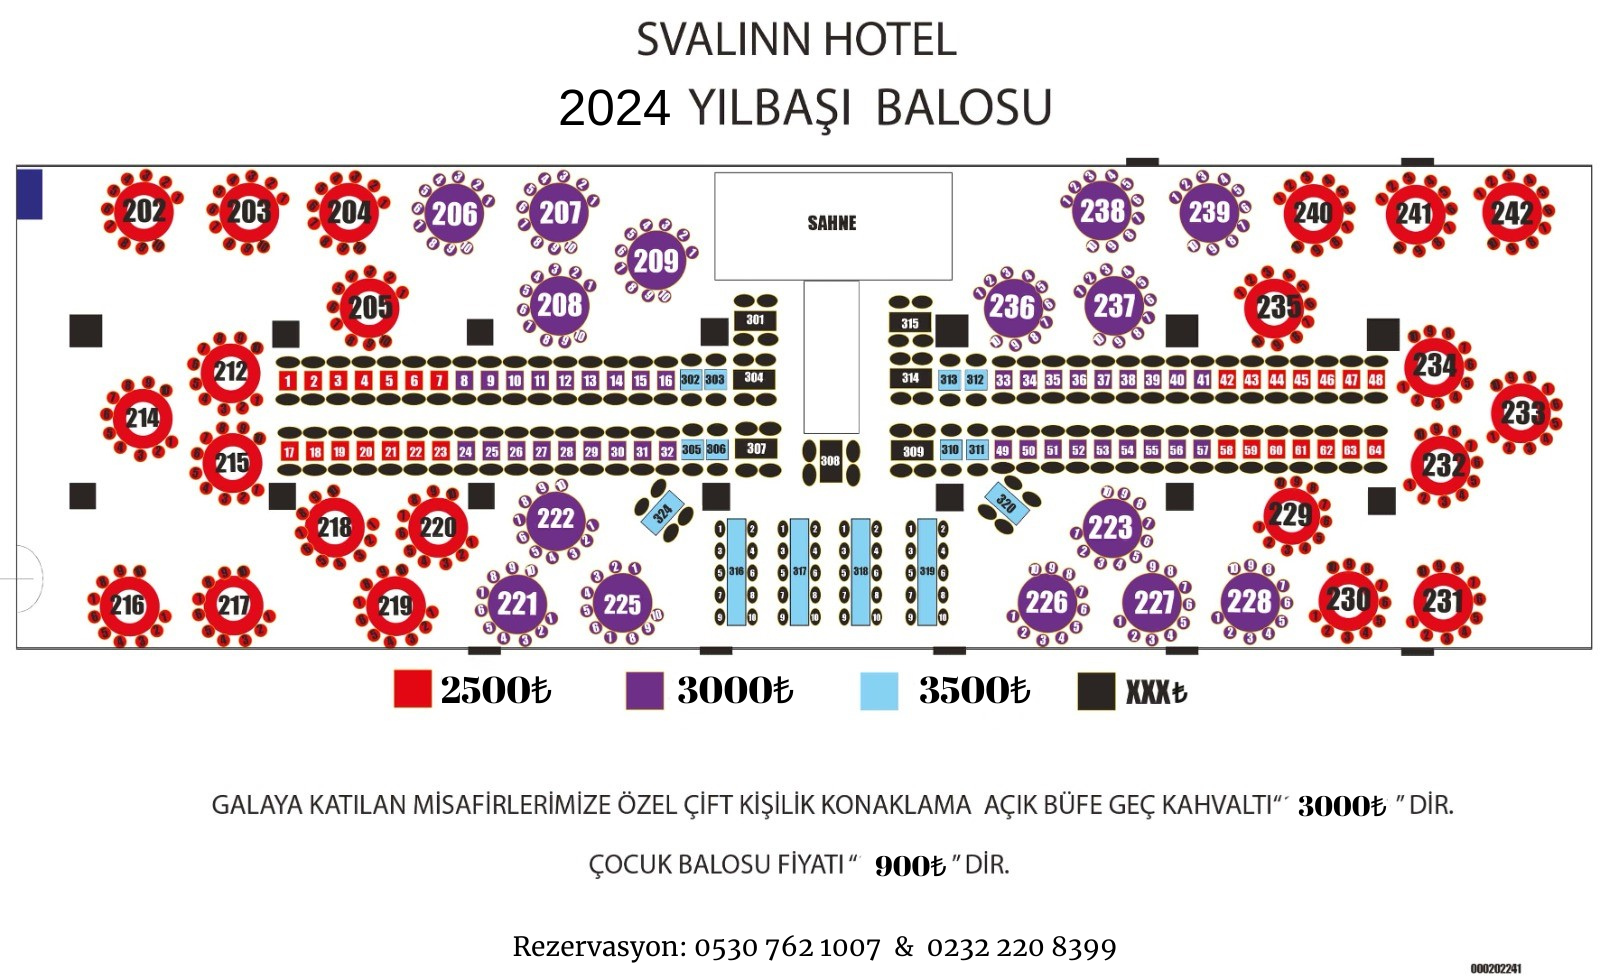 Svalinn Hotel İzmir Yılbaşı Programı 2024